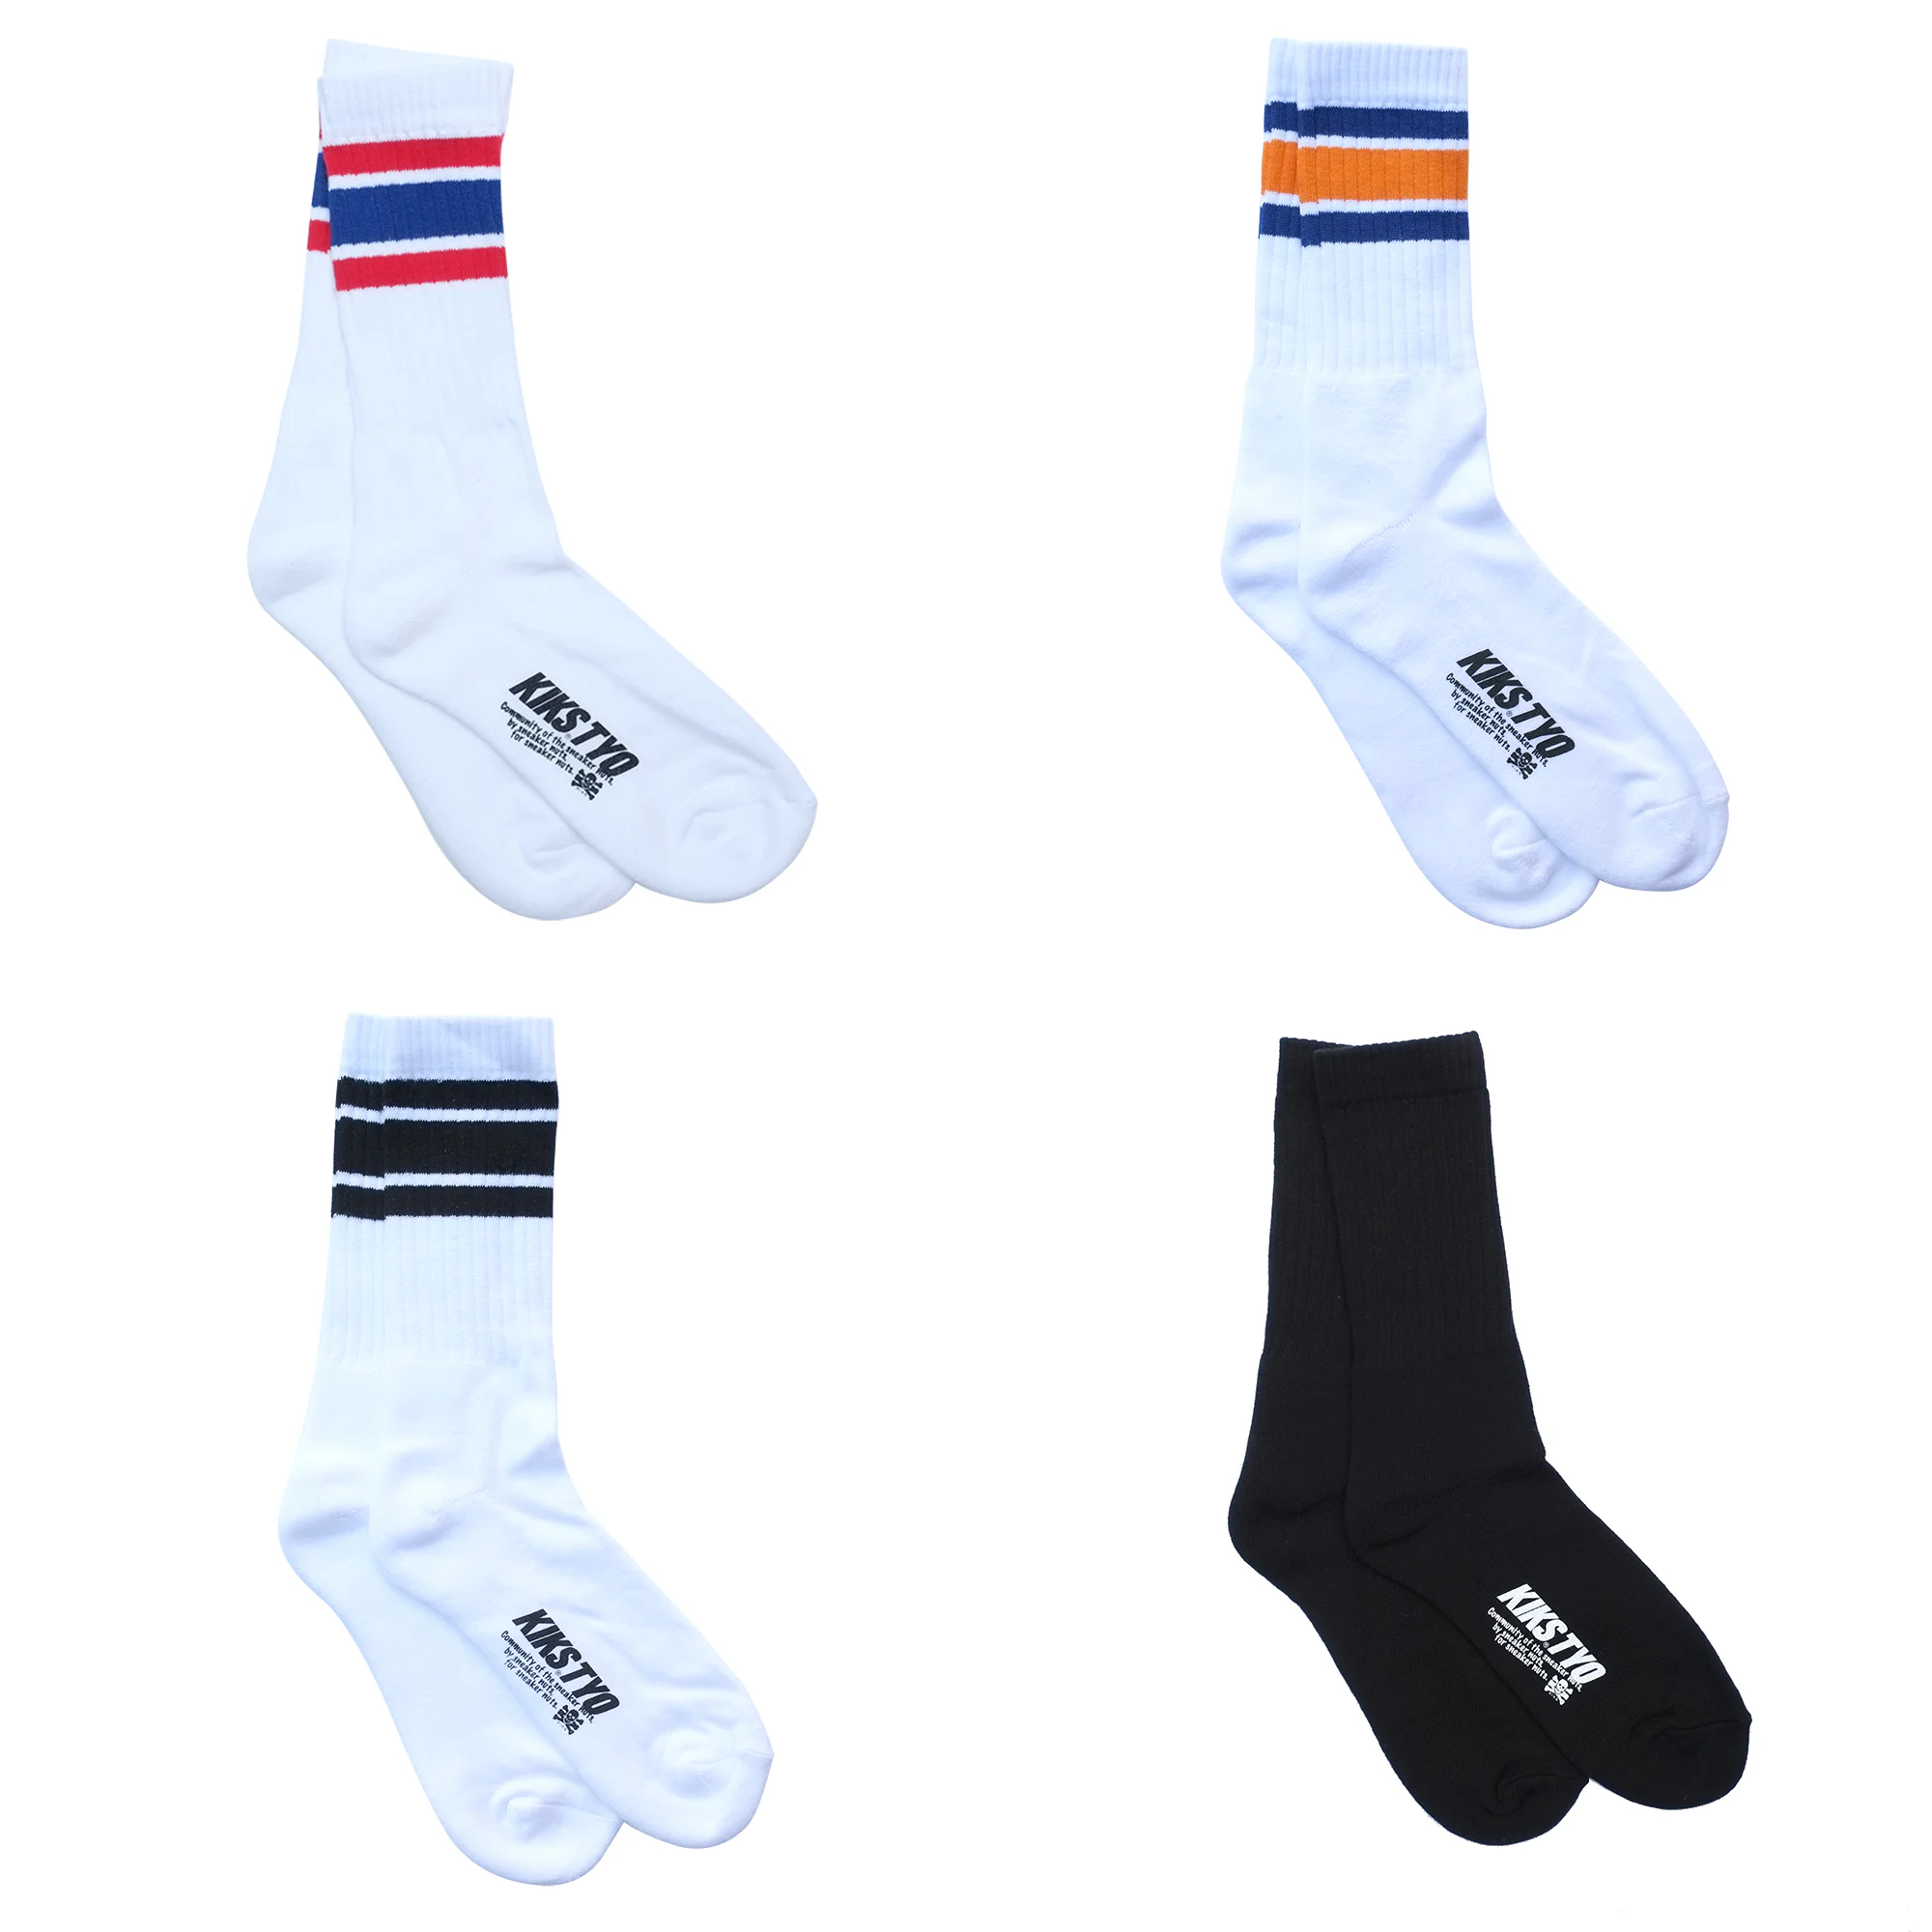 Variety Sock Bundle - 8 Pairs!